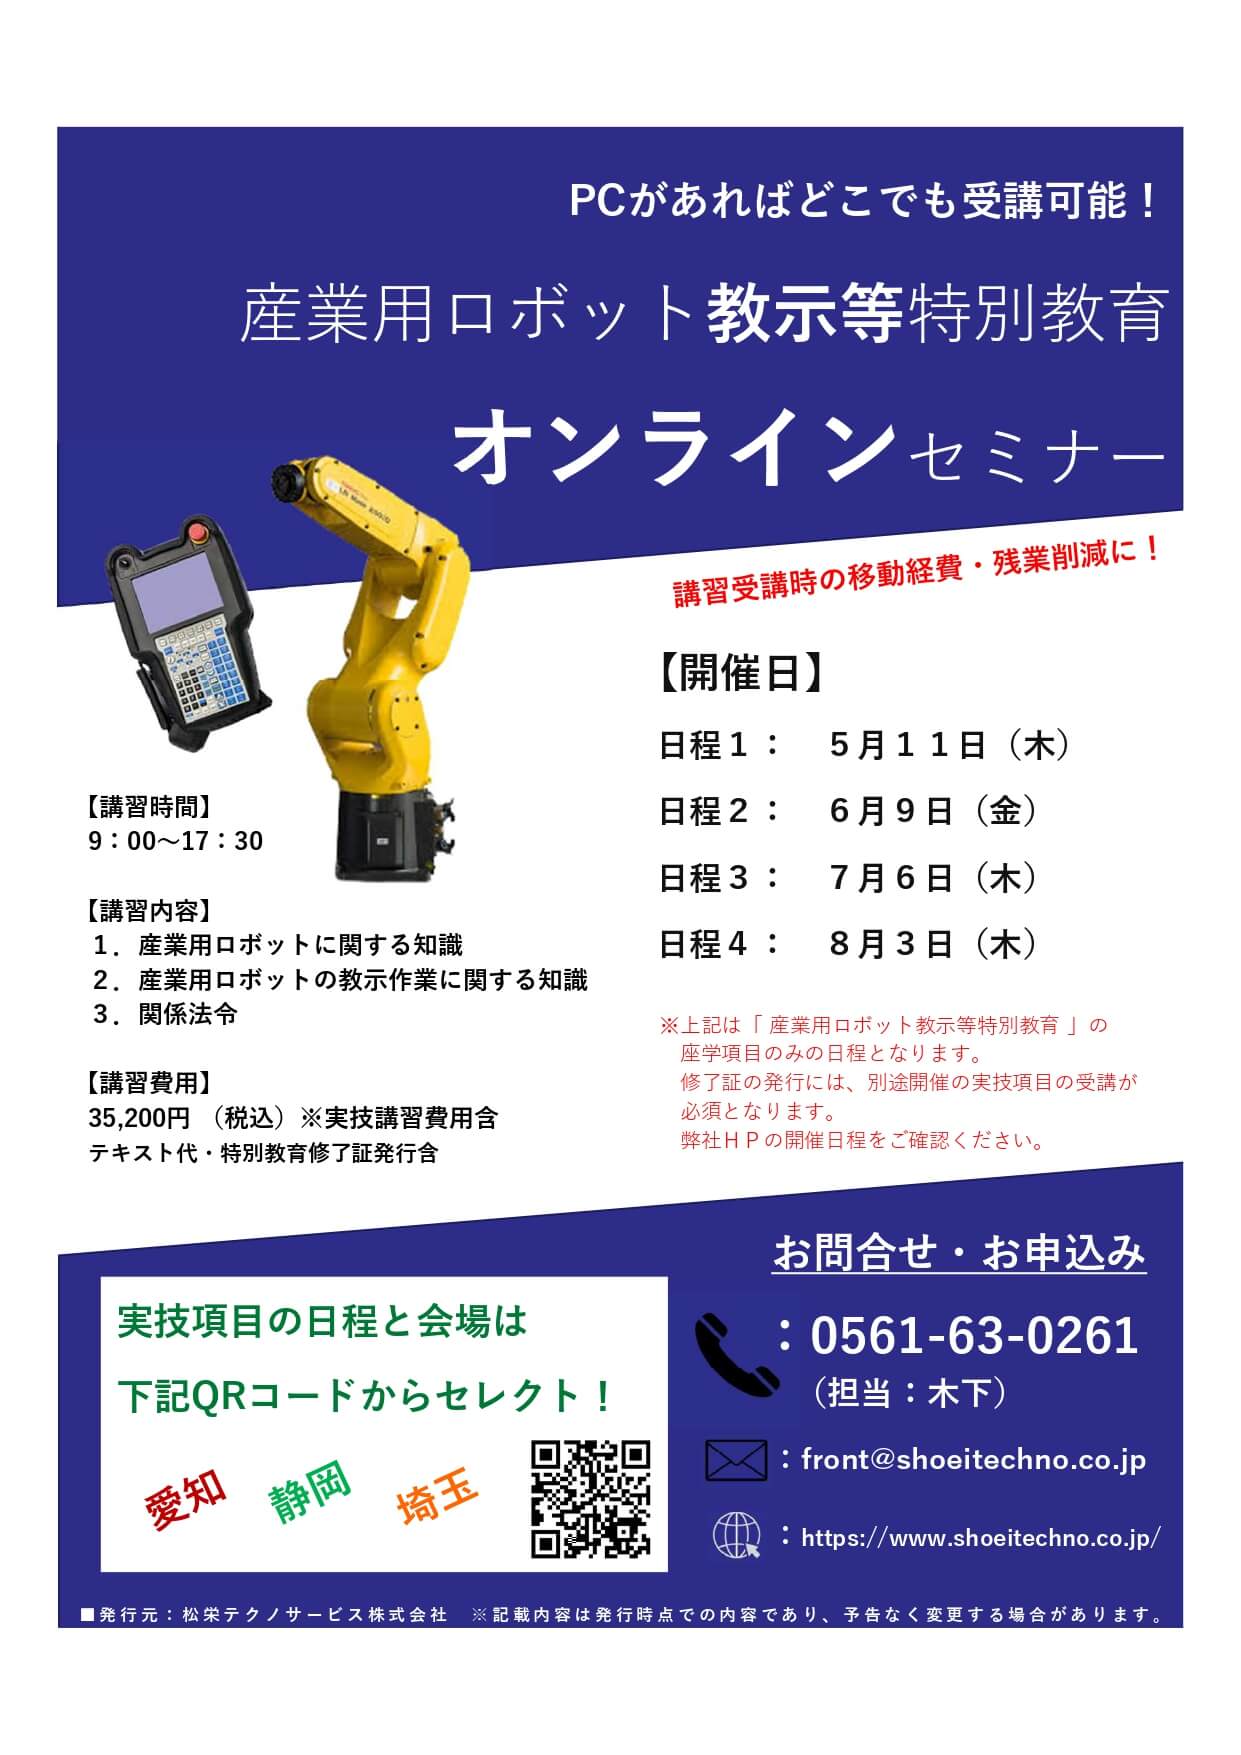 【終了しました】産業用ロボット 教示等 特別教育 オンラインセミナー開催のお知らせ